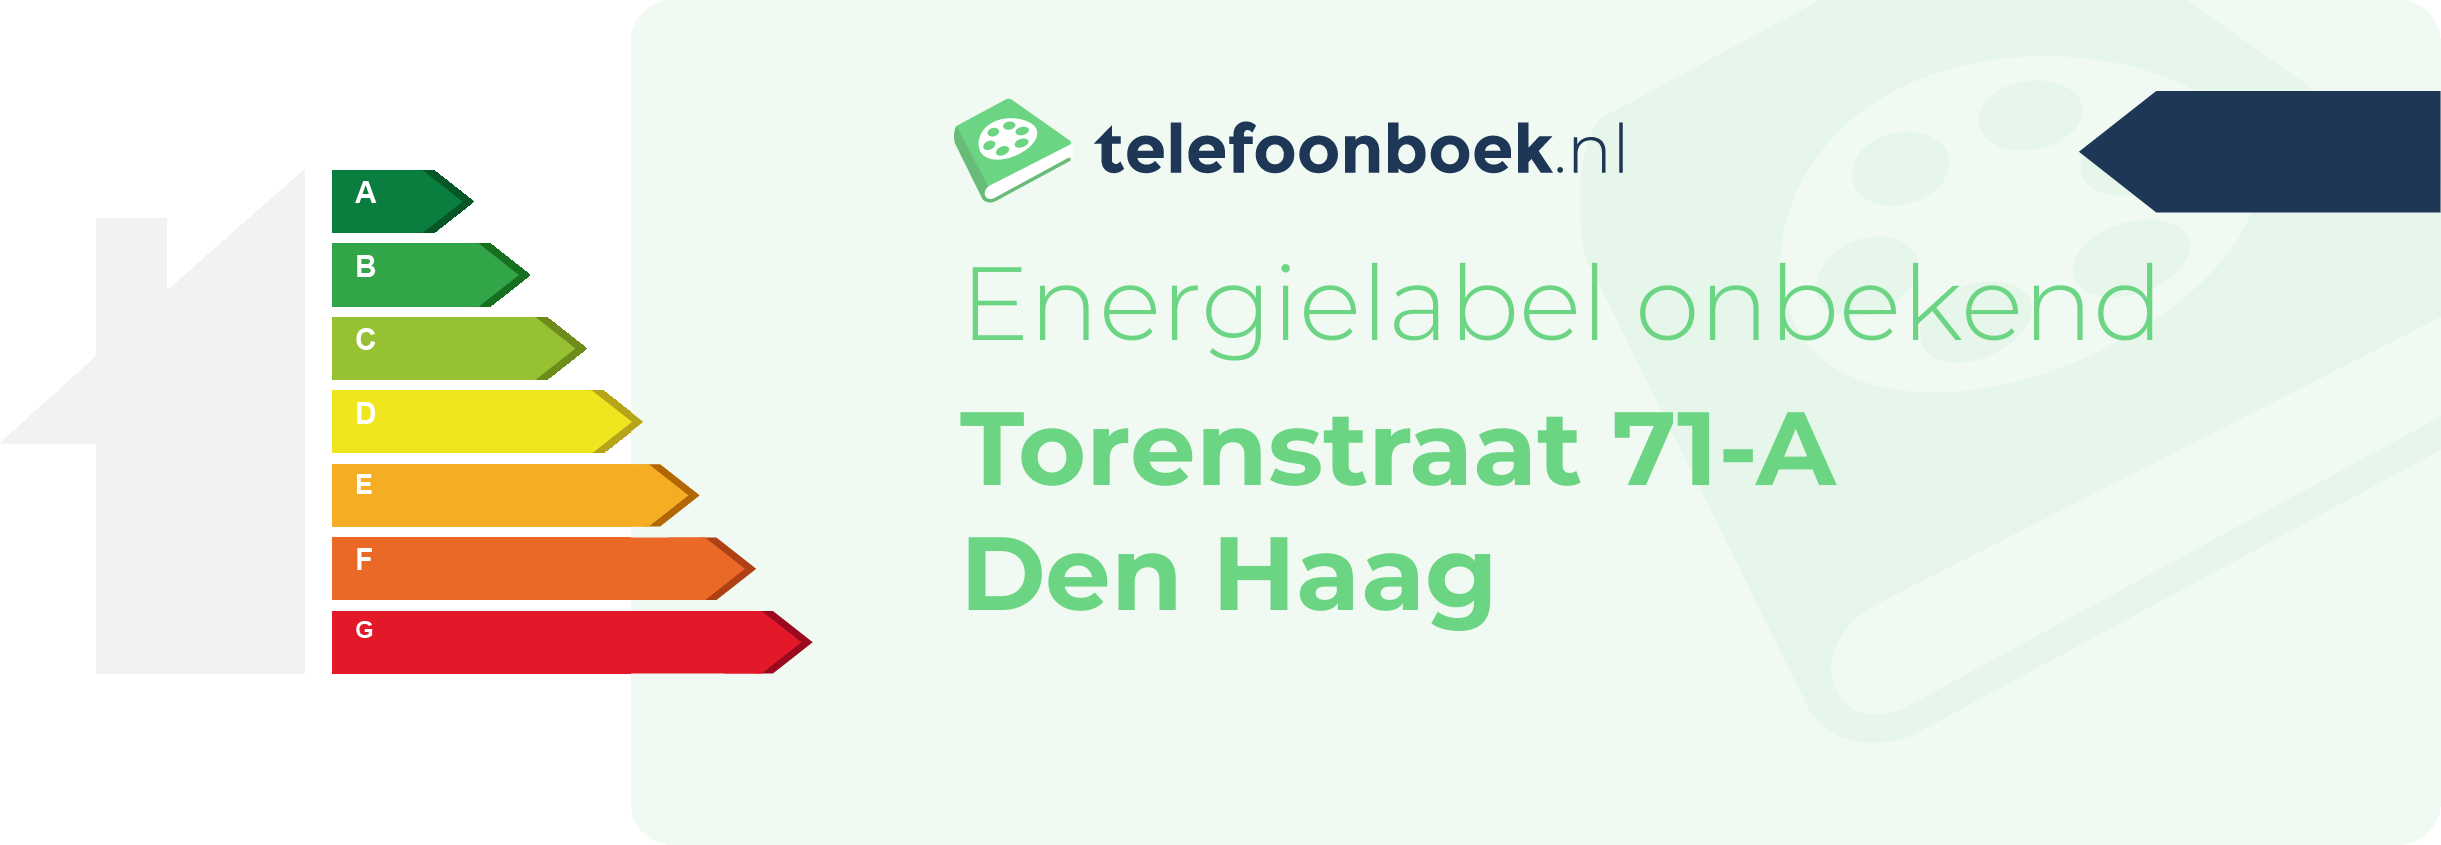 Energielabel Torenstraat 71-A Den Haag